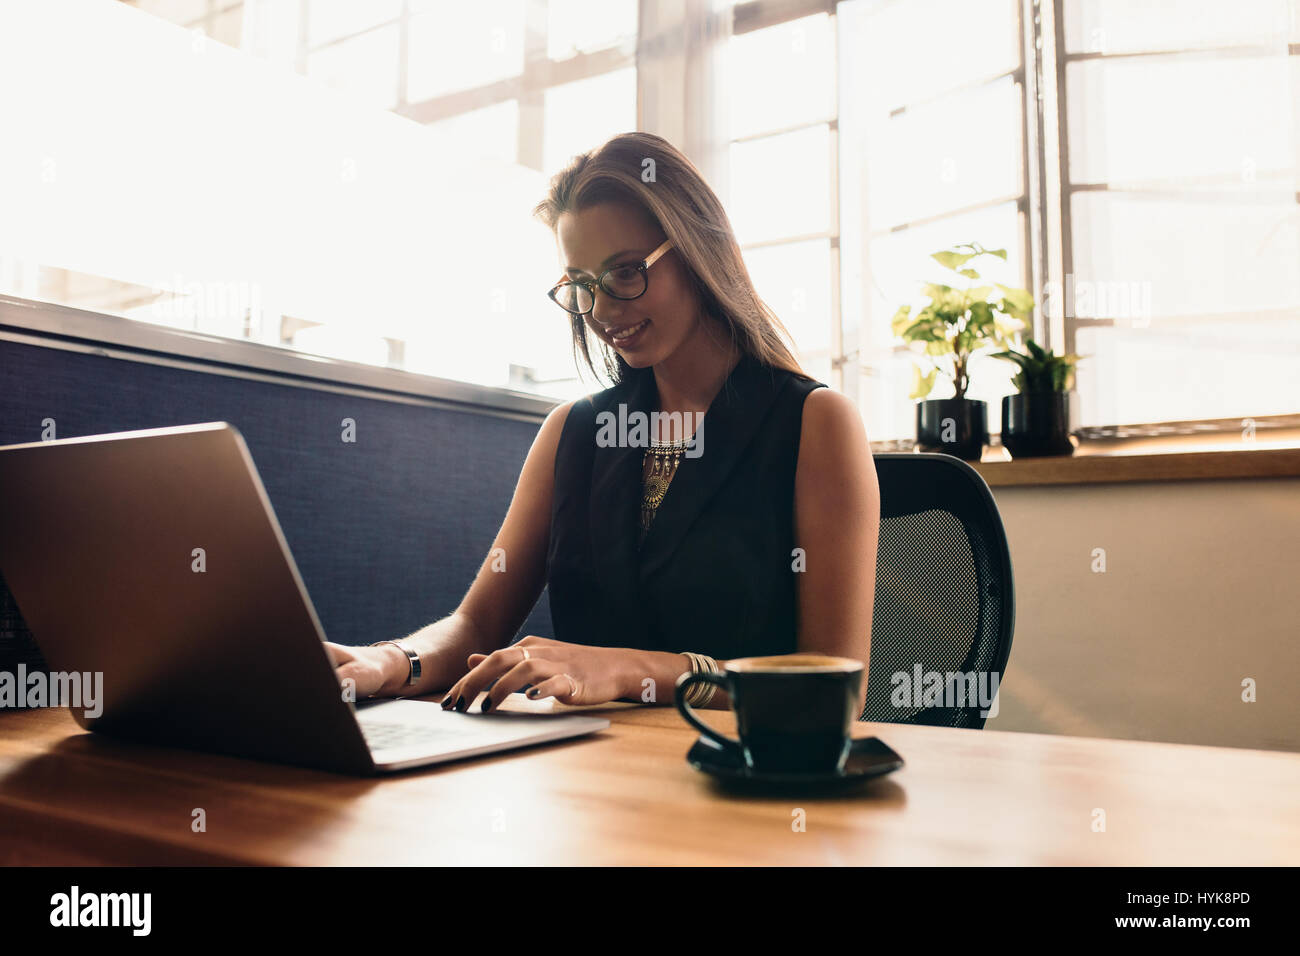 Weibliche Vloggerin ihr Vlog am Computer bearbeiten. Junge Frau an ihrem Schreibtisch im Büro arbeiten am Computer mit einer Tasse Kaffee. Stockfoto